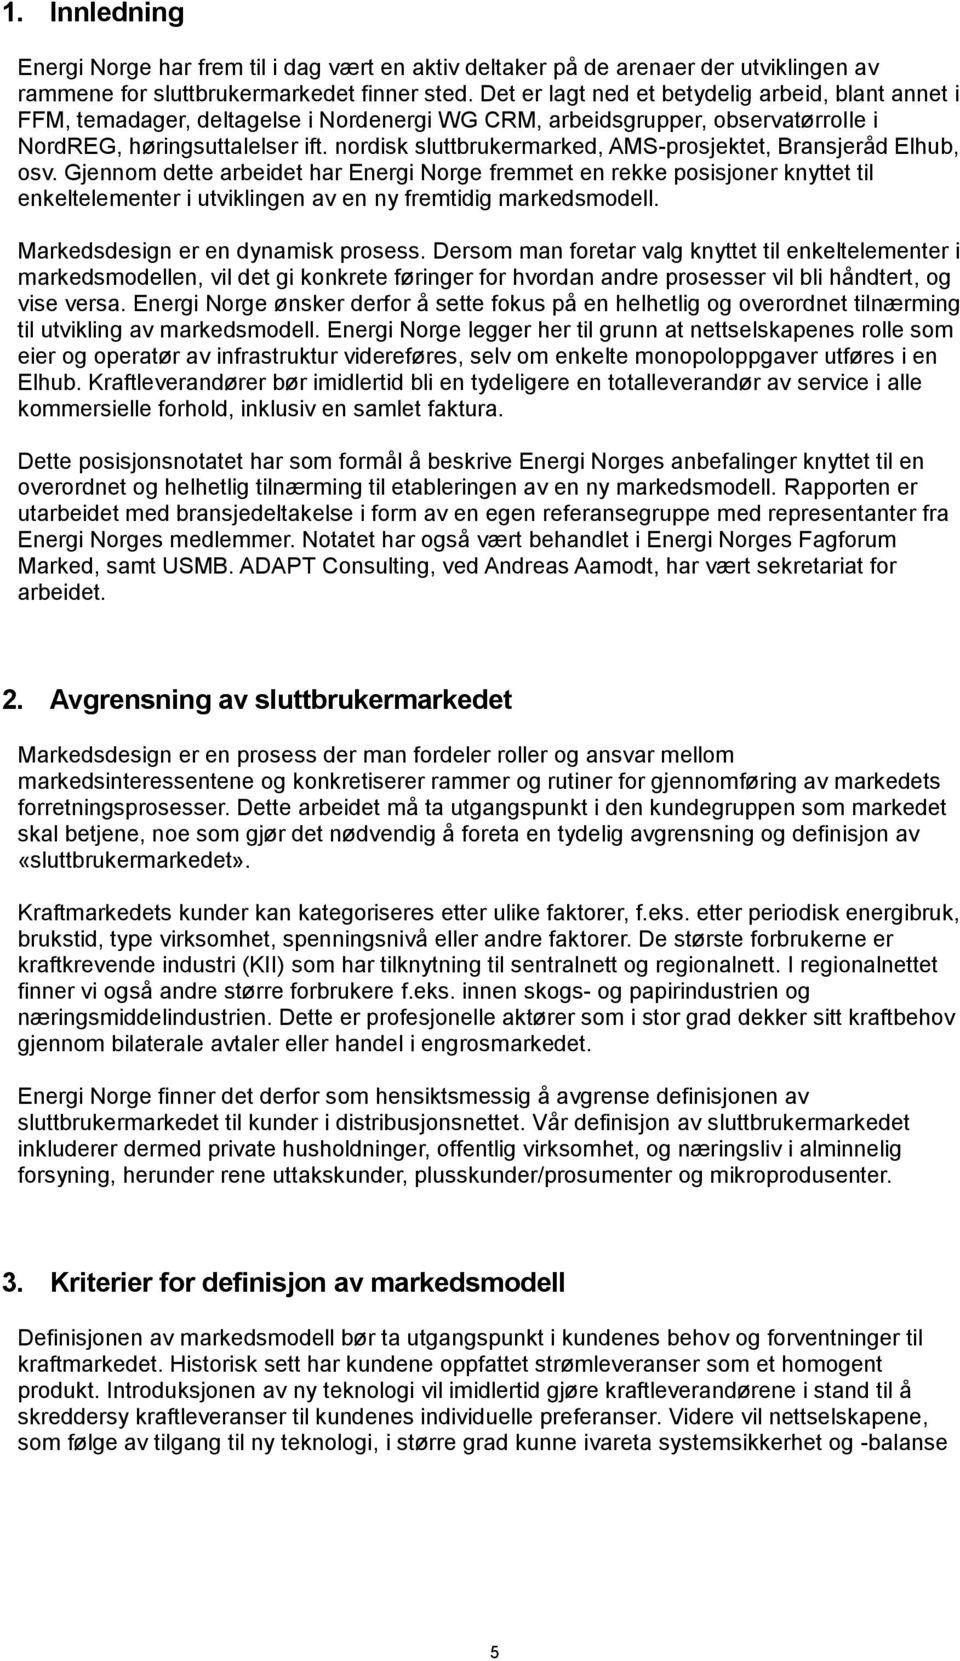 nordisk sluttbrukermarked, AMS-prosjektet, Bransjeråd Elhub, osv.